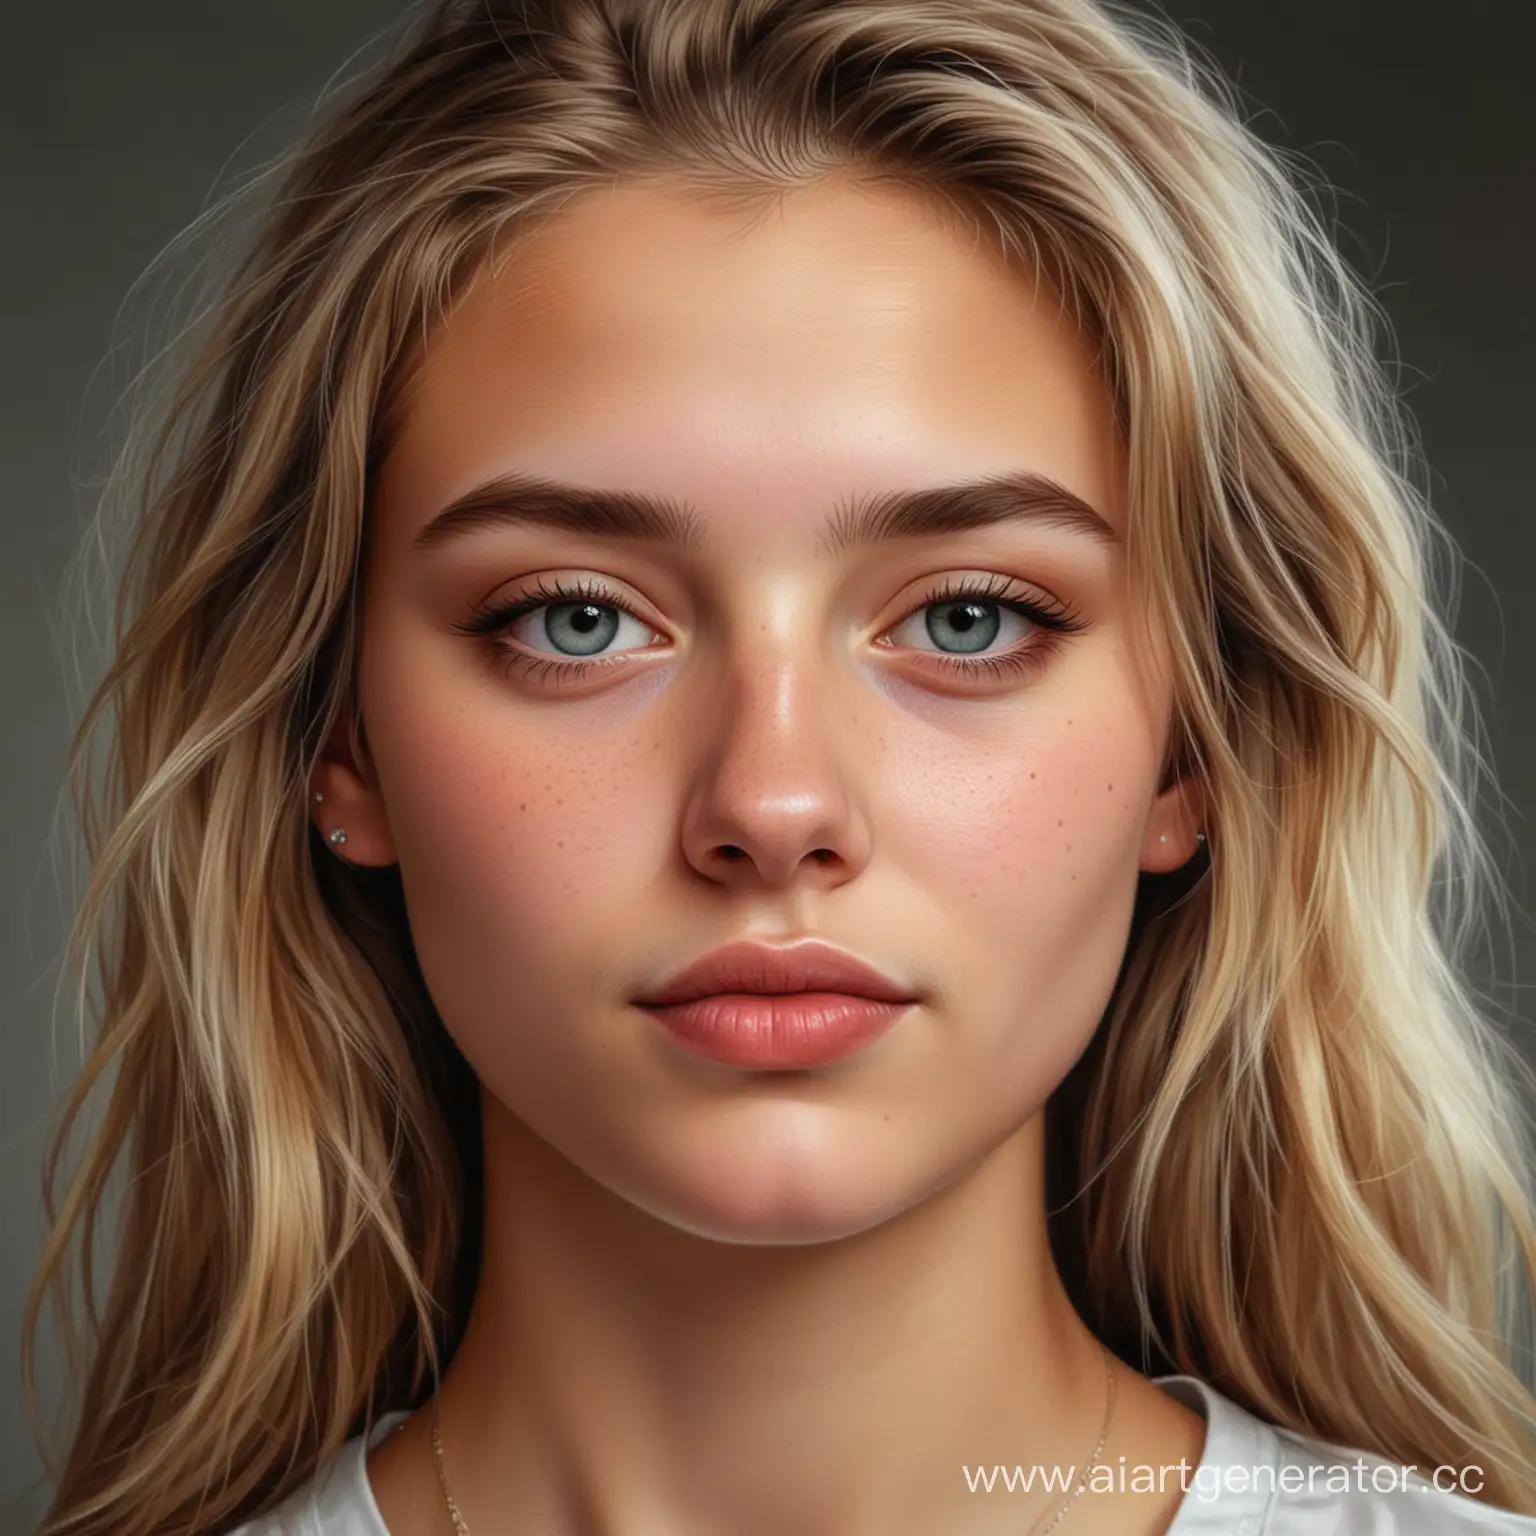 реалистичный портрет красивой девушки 20ти летнего возраста